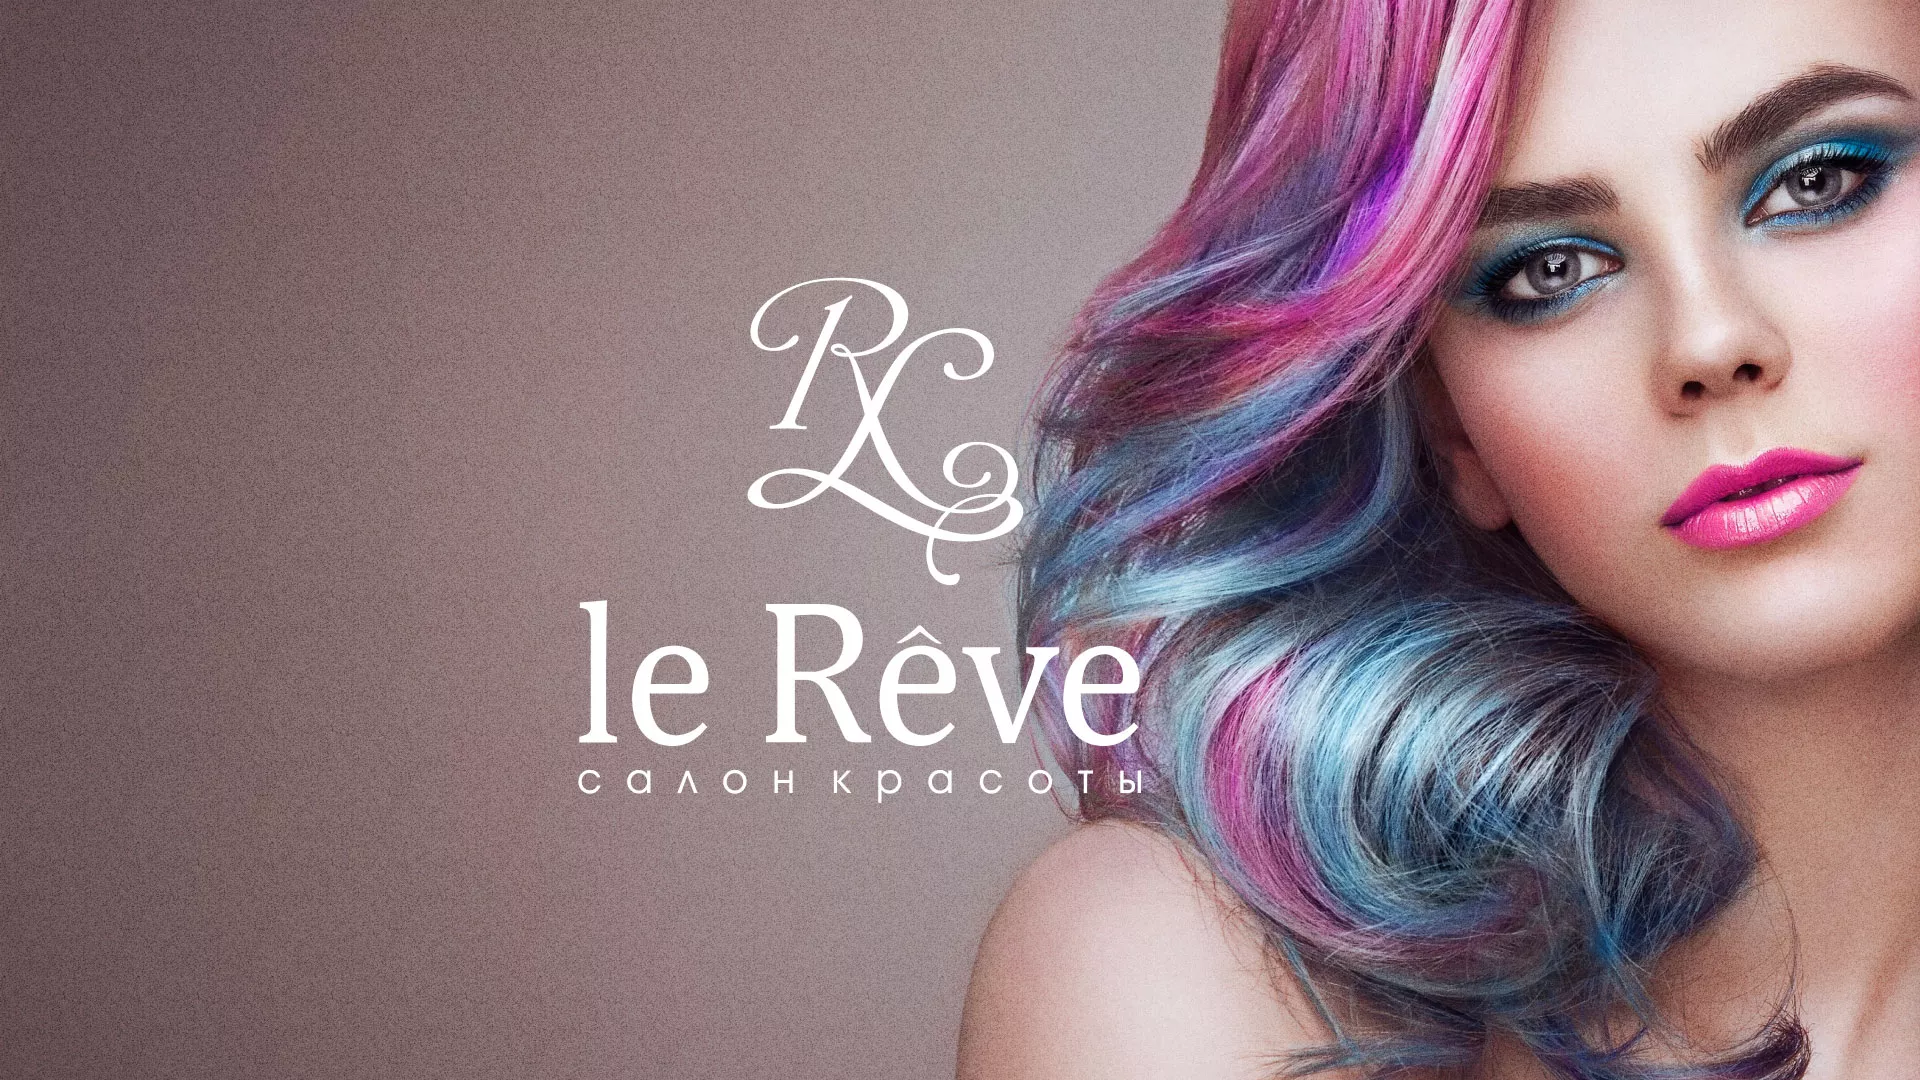 Создание сайта для салона красоты «Le Reve» в Горбатове